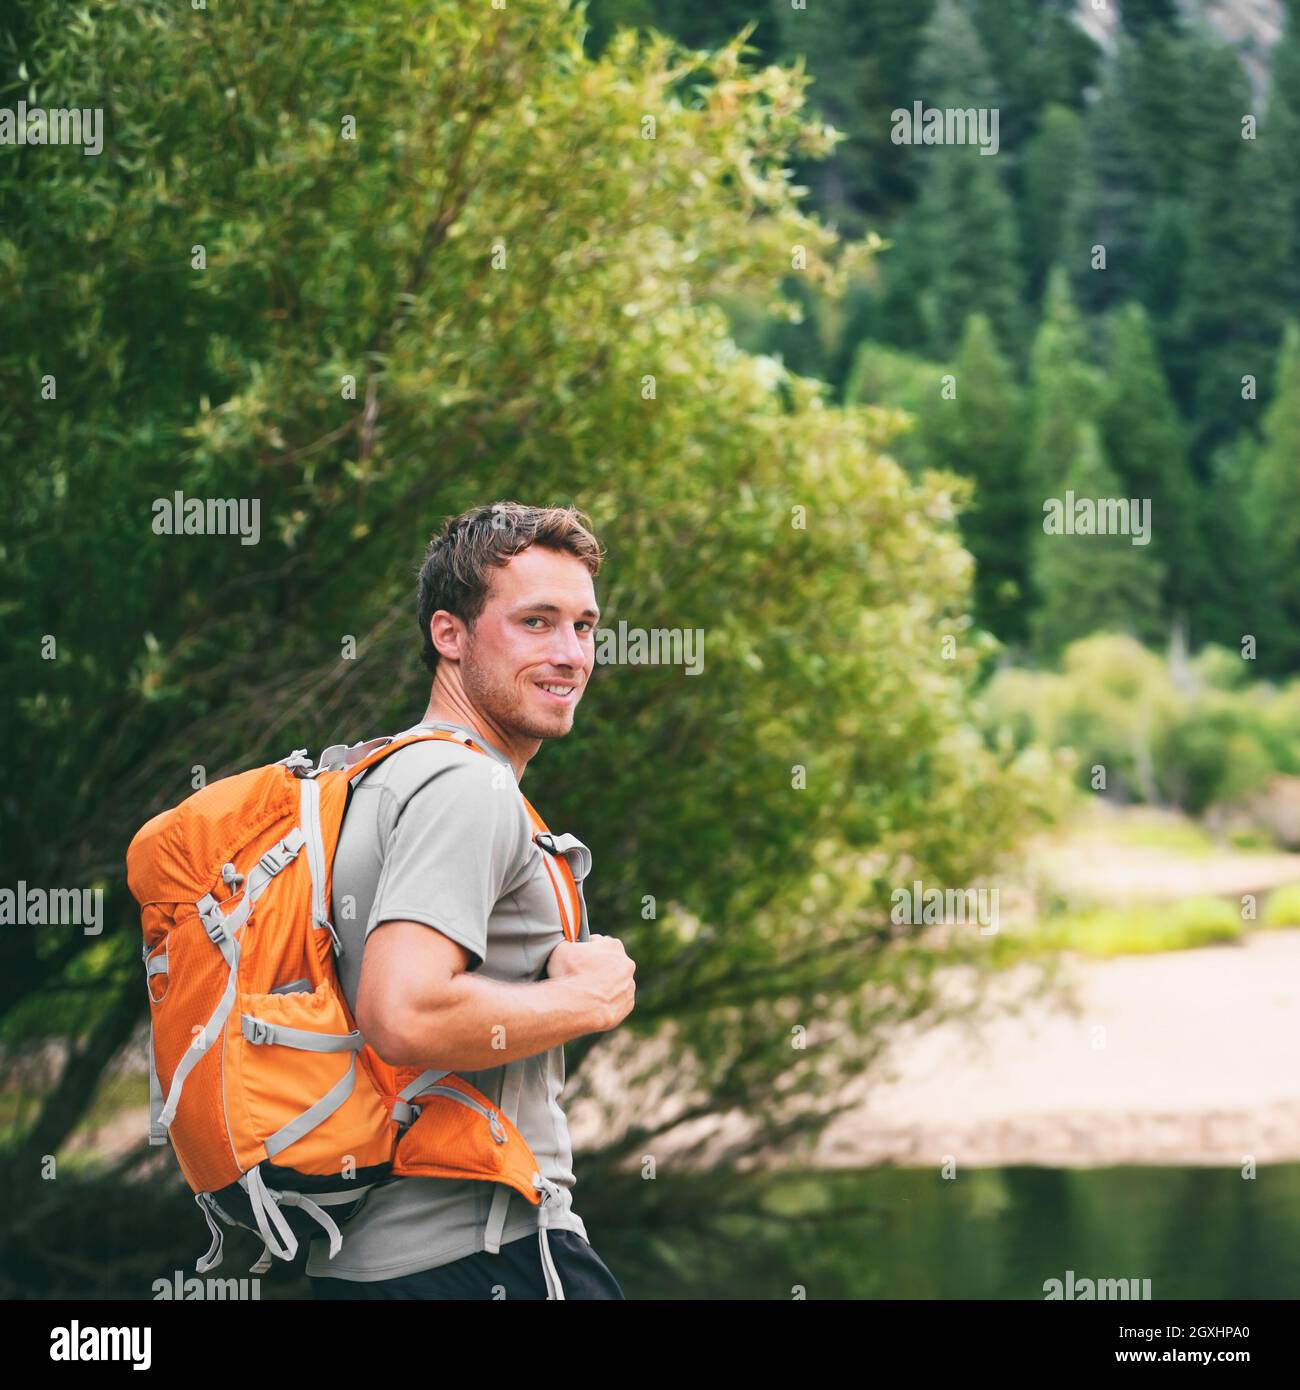 Camp d'été jeune homme en voyage randonnée pédestre randonnée pédestre heureux randonnée avec camping sac à dos dans la forêt randonnée sentier Banque D'Images